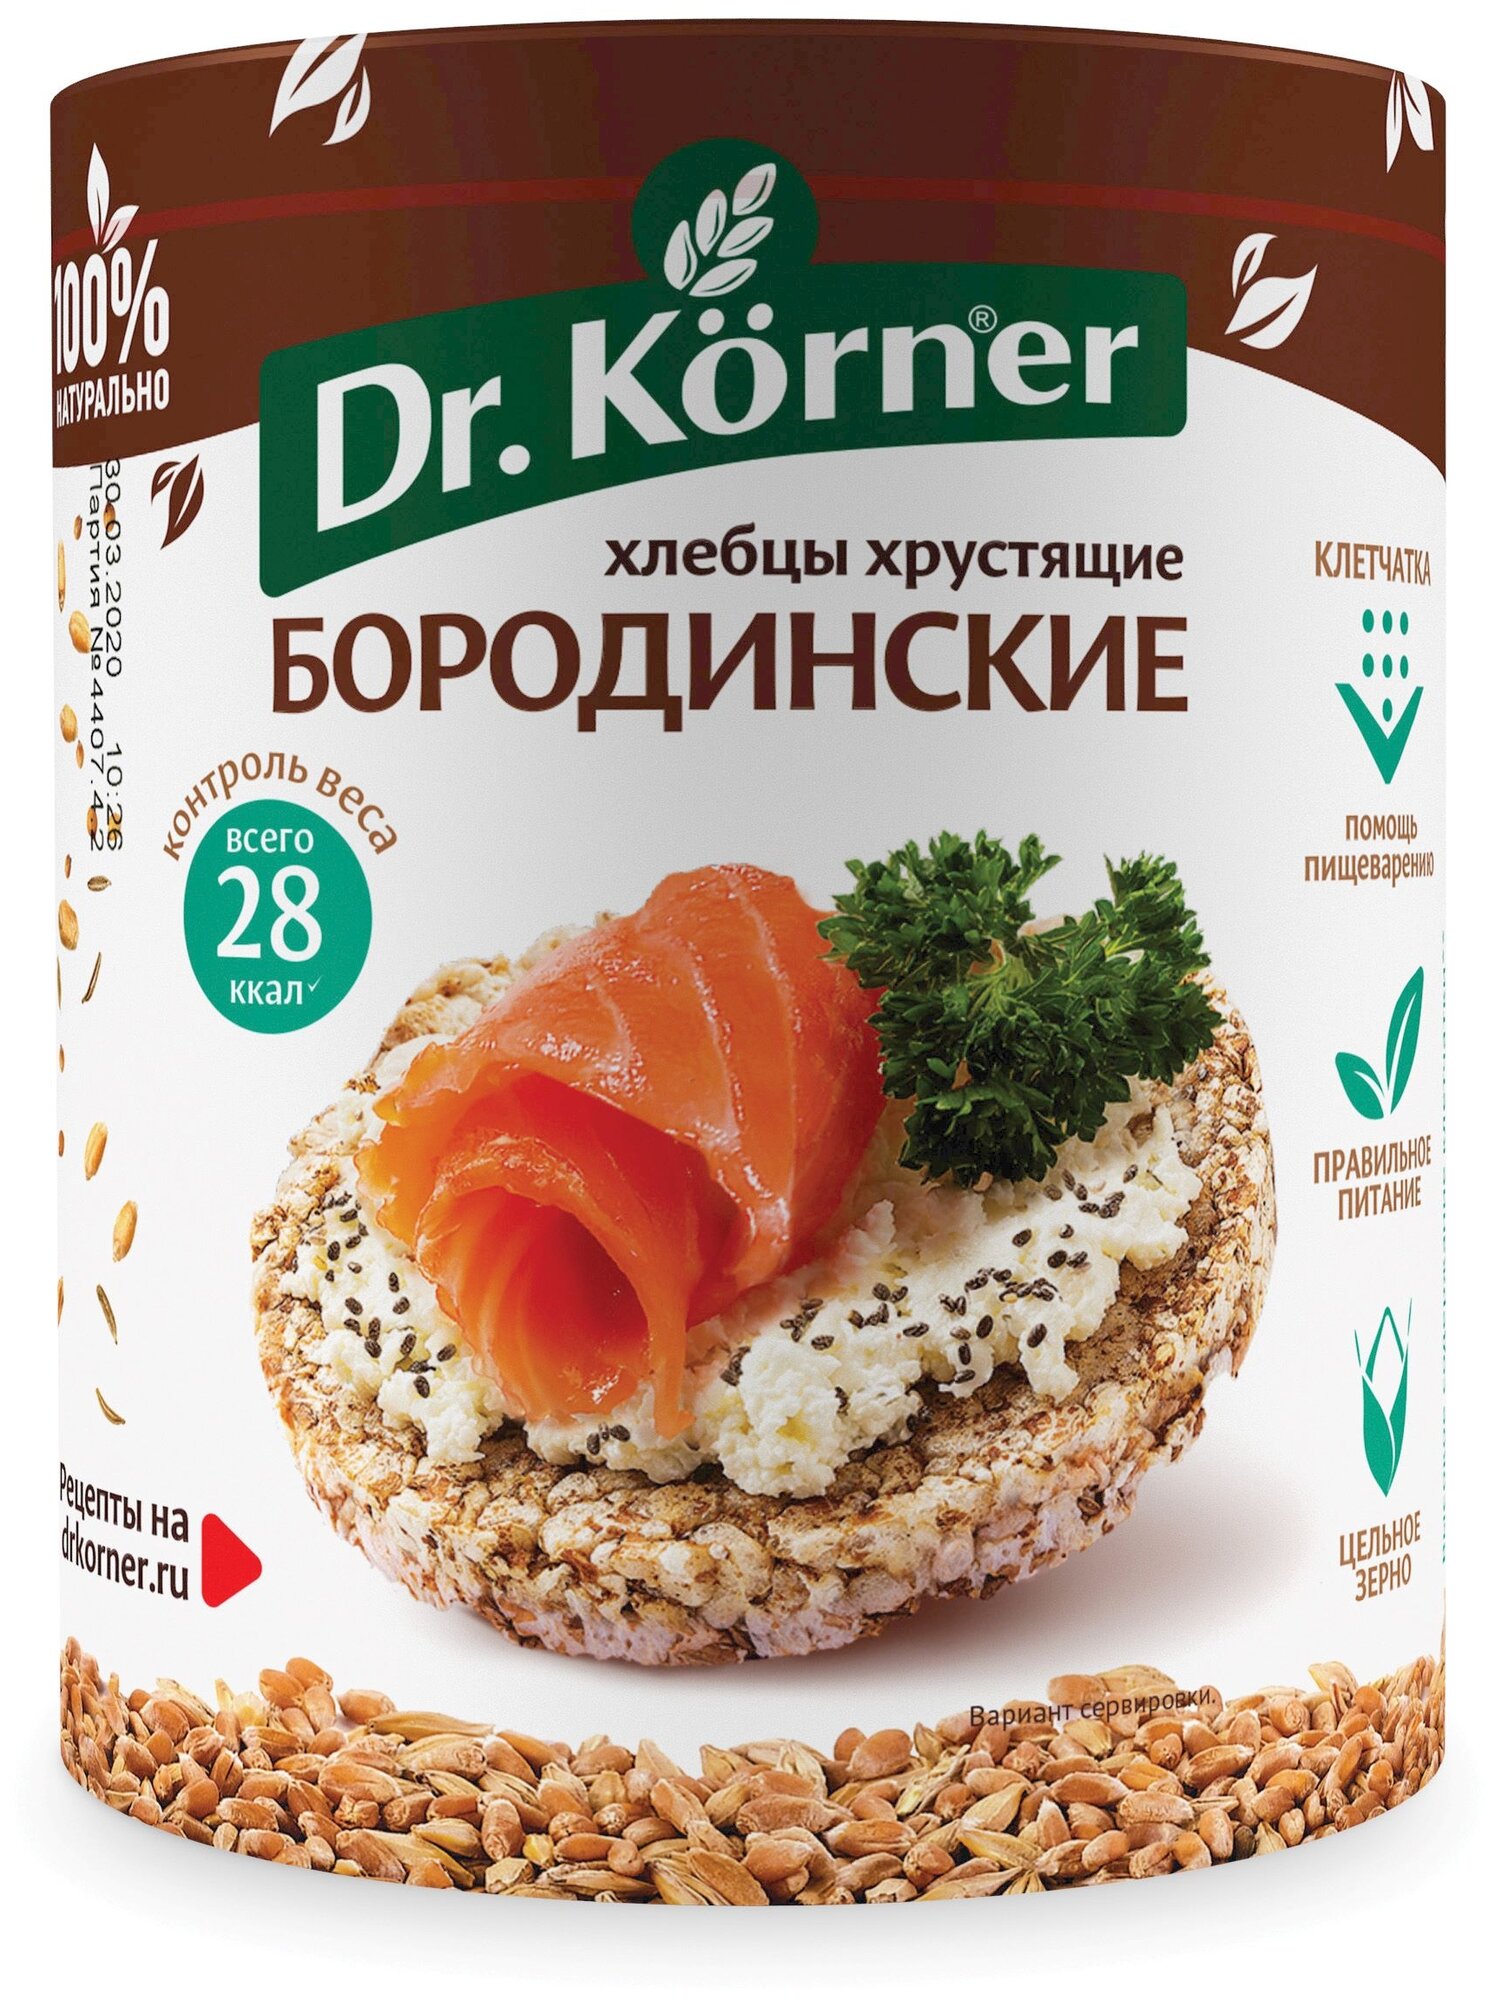 Хлебцы ржаные Dr. Korner бородинские — купить по низкой цене на Яндекс Маркете